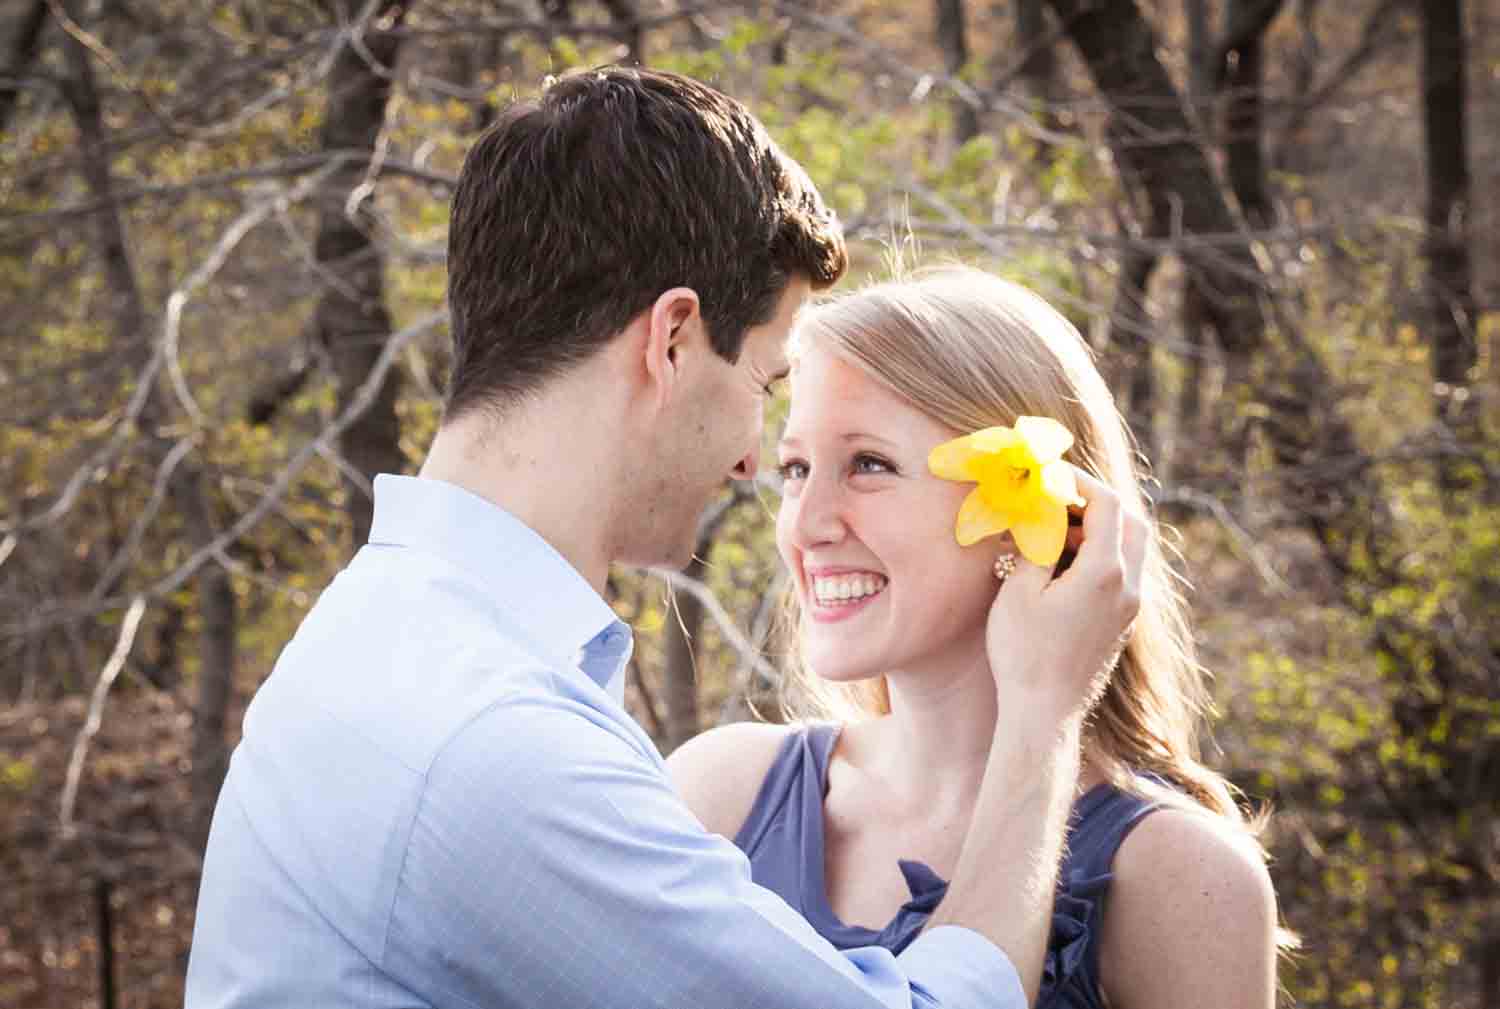 Man putting daffodil in woman's hair